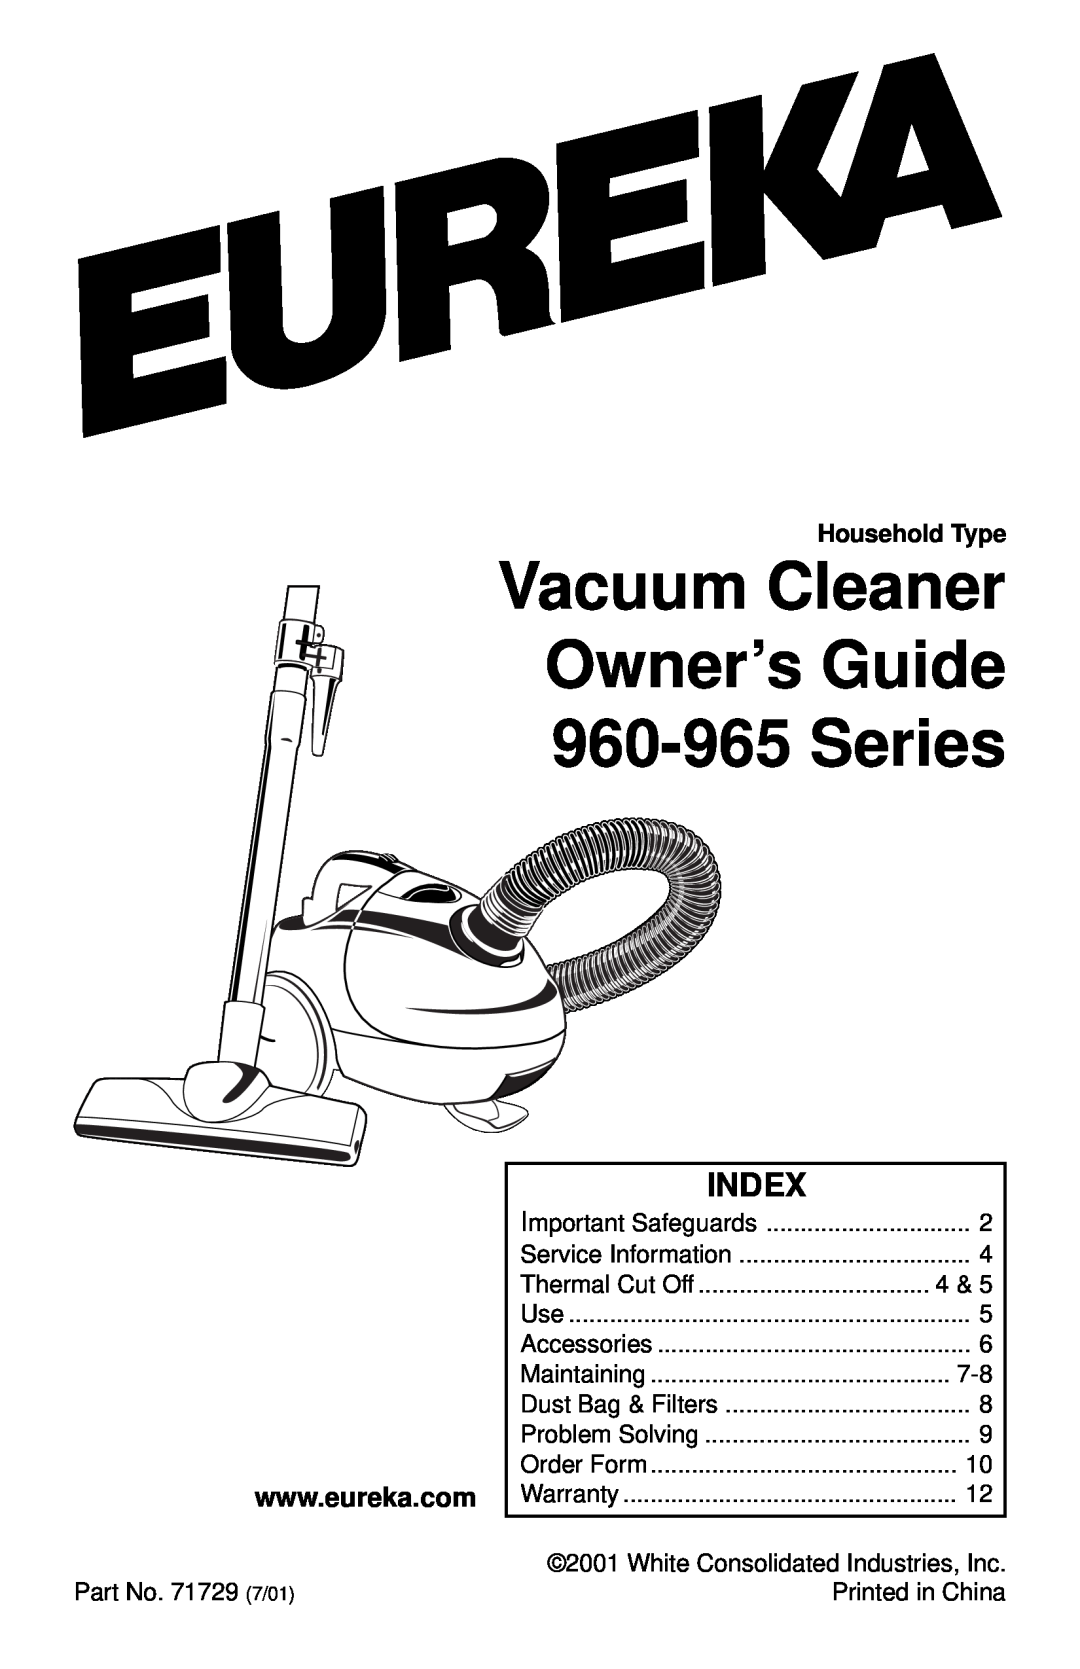 Eureka warranty Index, Vacuum Cleaner Owner’s Guide 960-965 Series 